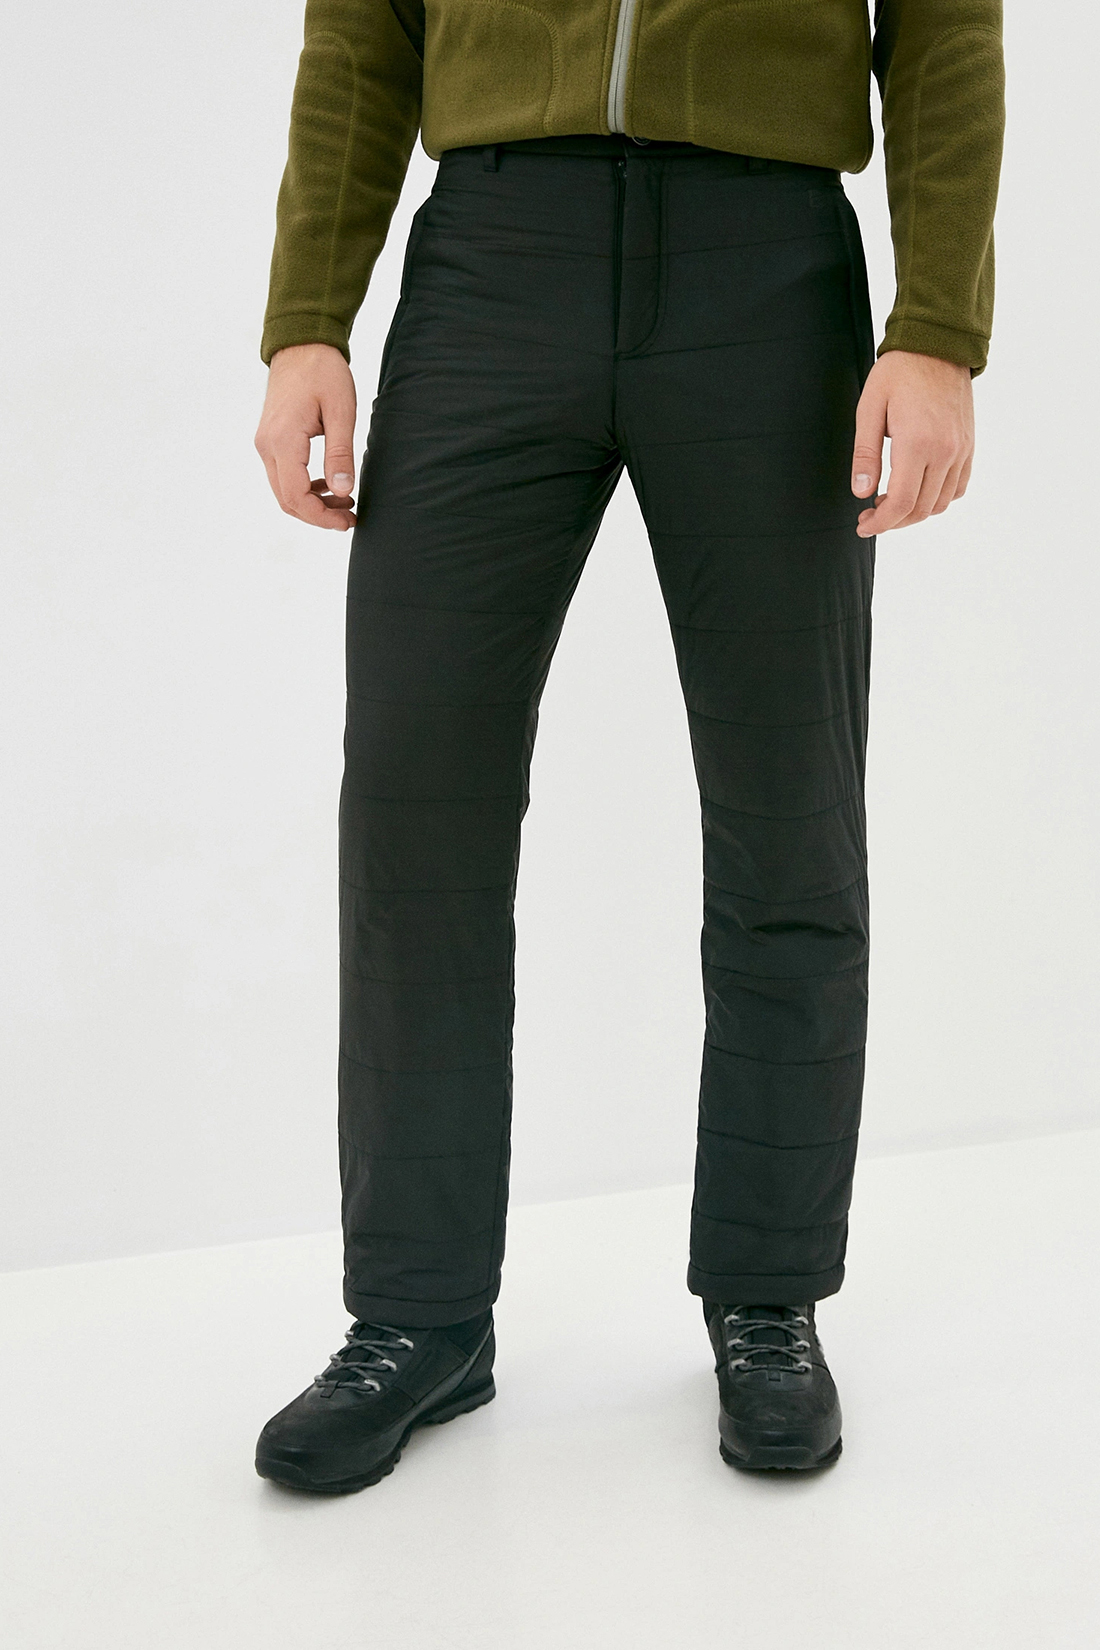 Утеплённые брюки с подкладкой из флиса (арт. baon B799522), размер 3XL, цвет черный